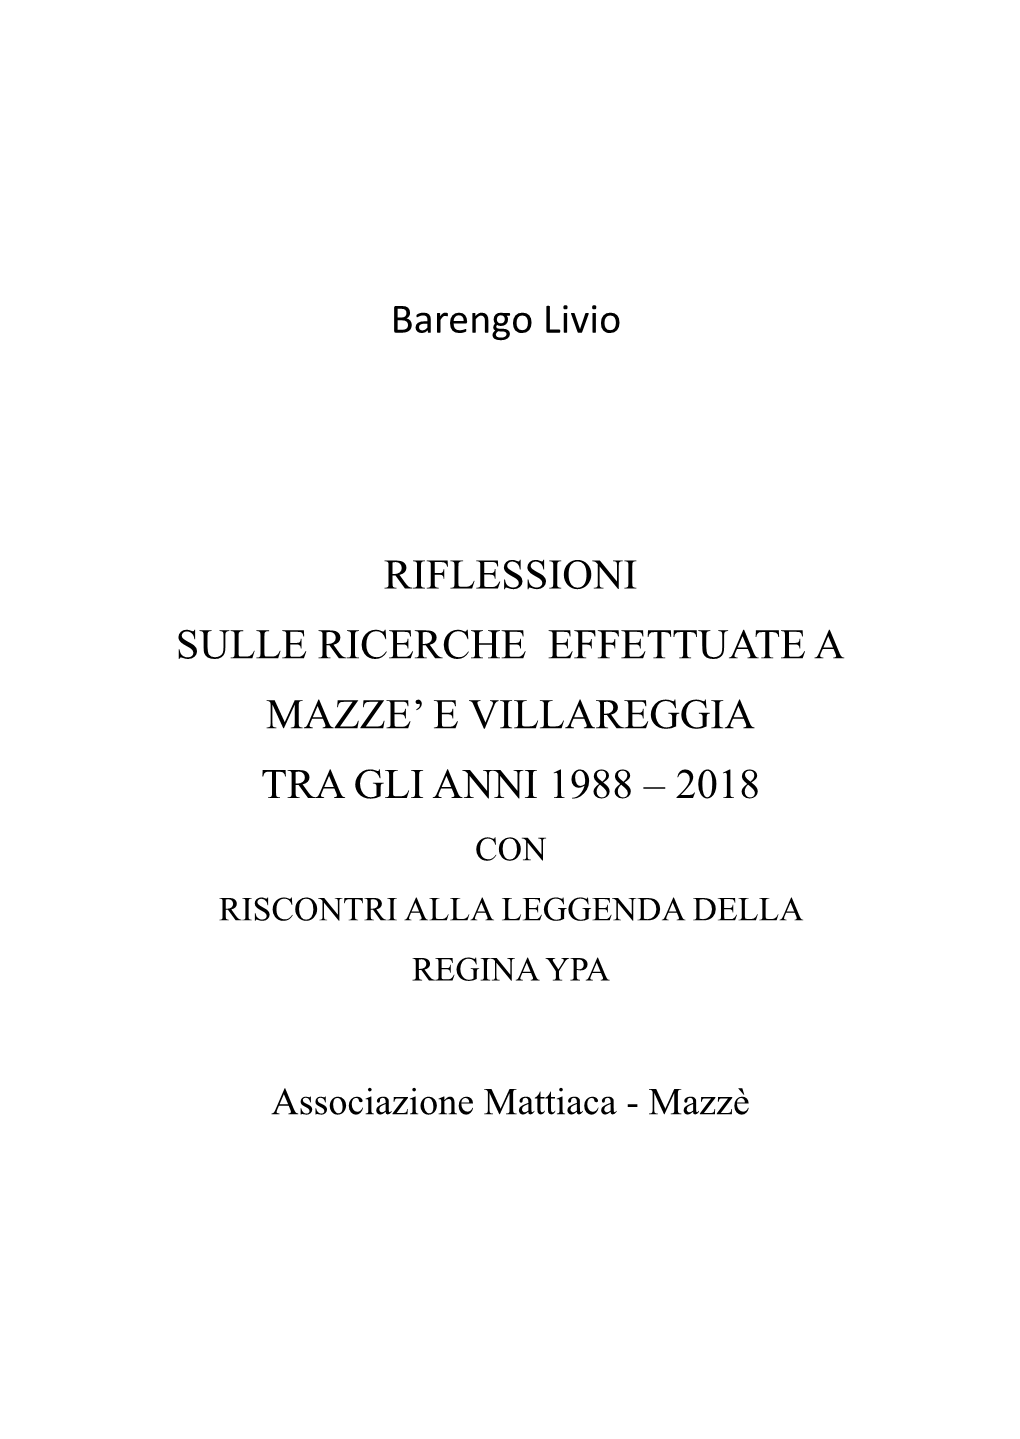 Barengo Livio RIFLESSIONI SULLE RICERCHE EFFETTUATE a MAZZE' E VILLAREGGIA TRA GLI ANNI 1988